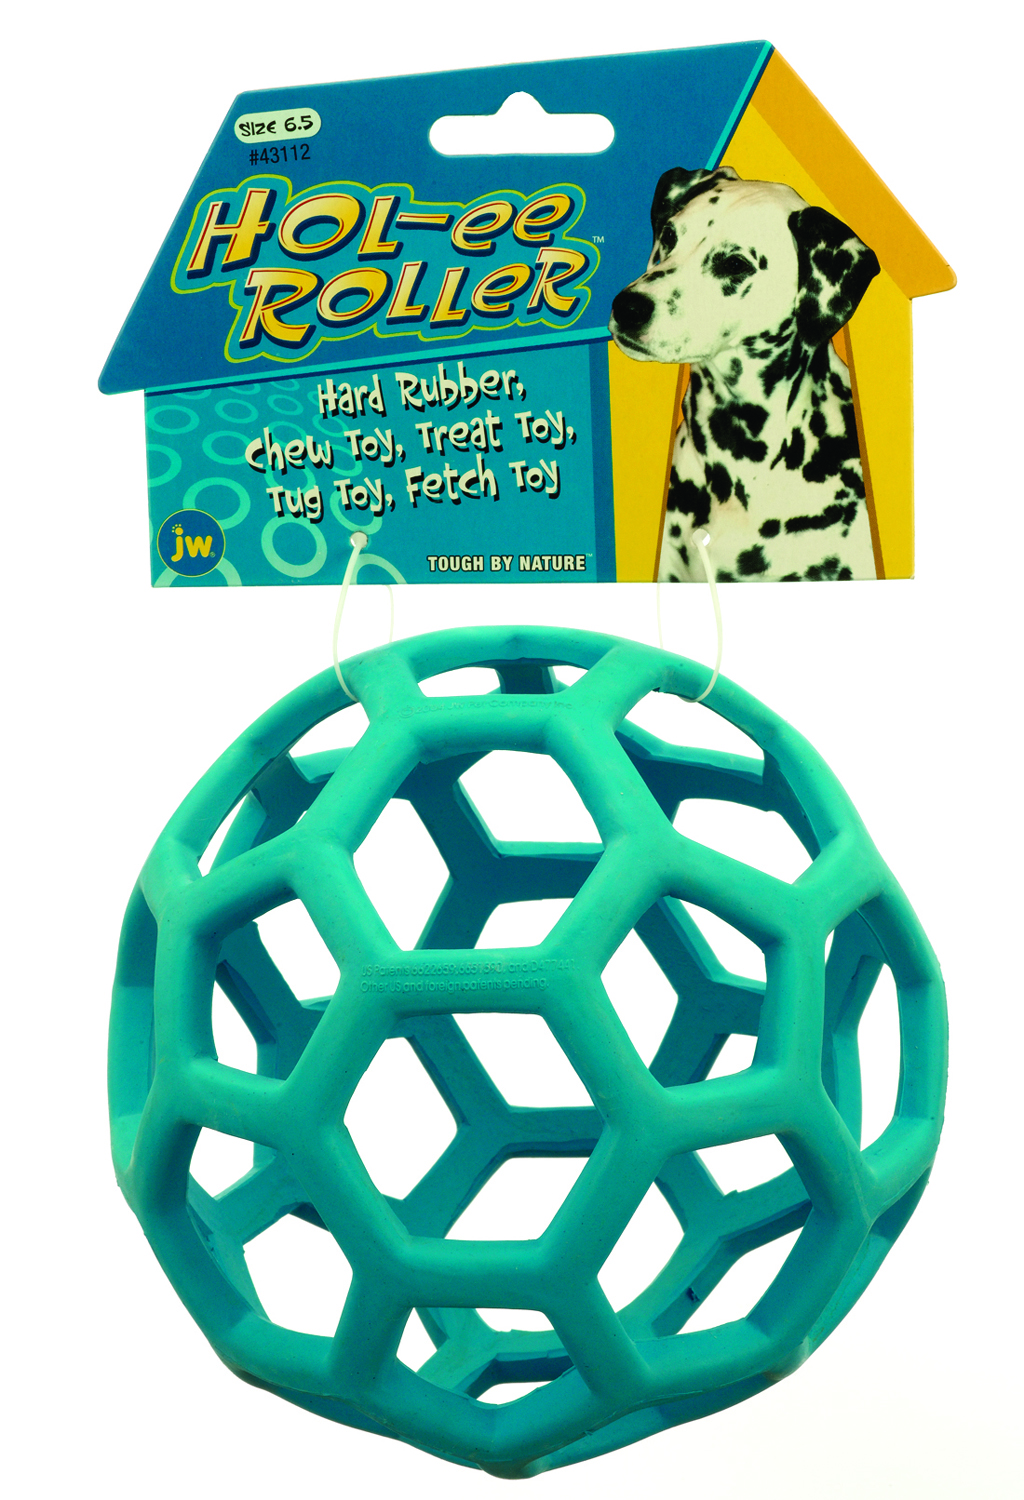 Hol-Ee Roller Dog Toy